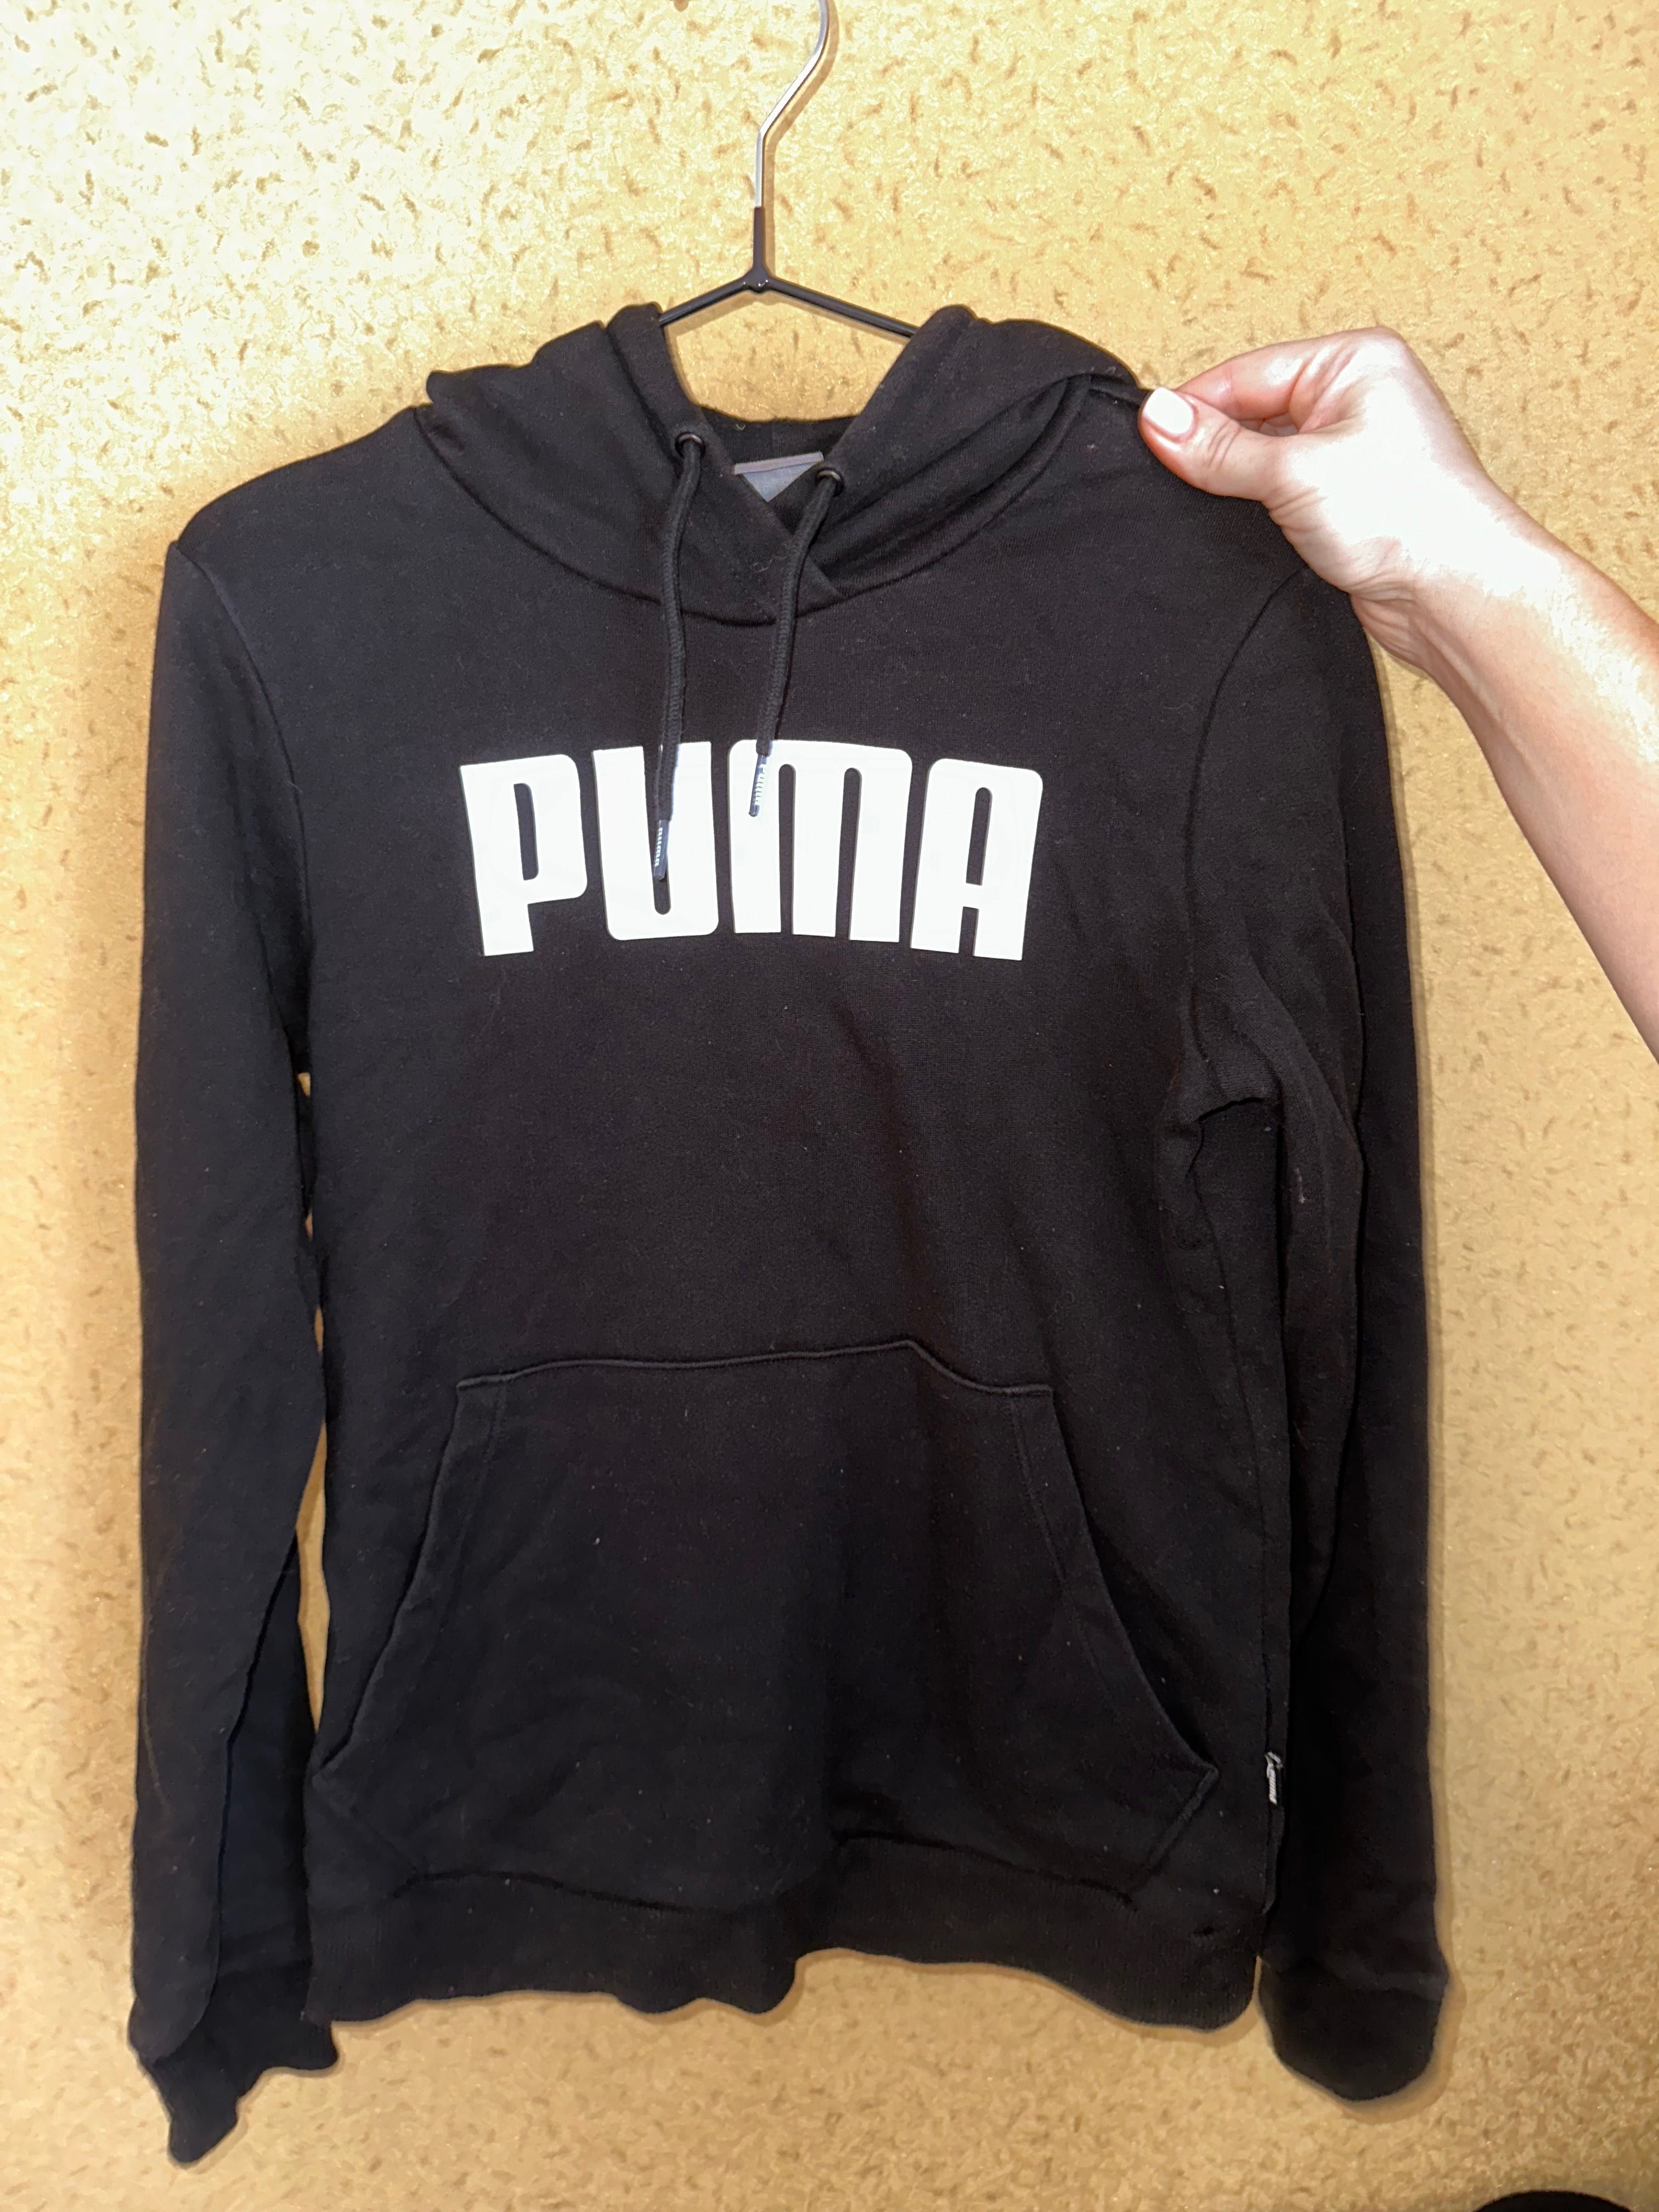 Підлітковий спортивний костюм “Puma”